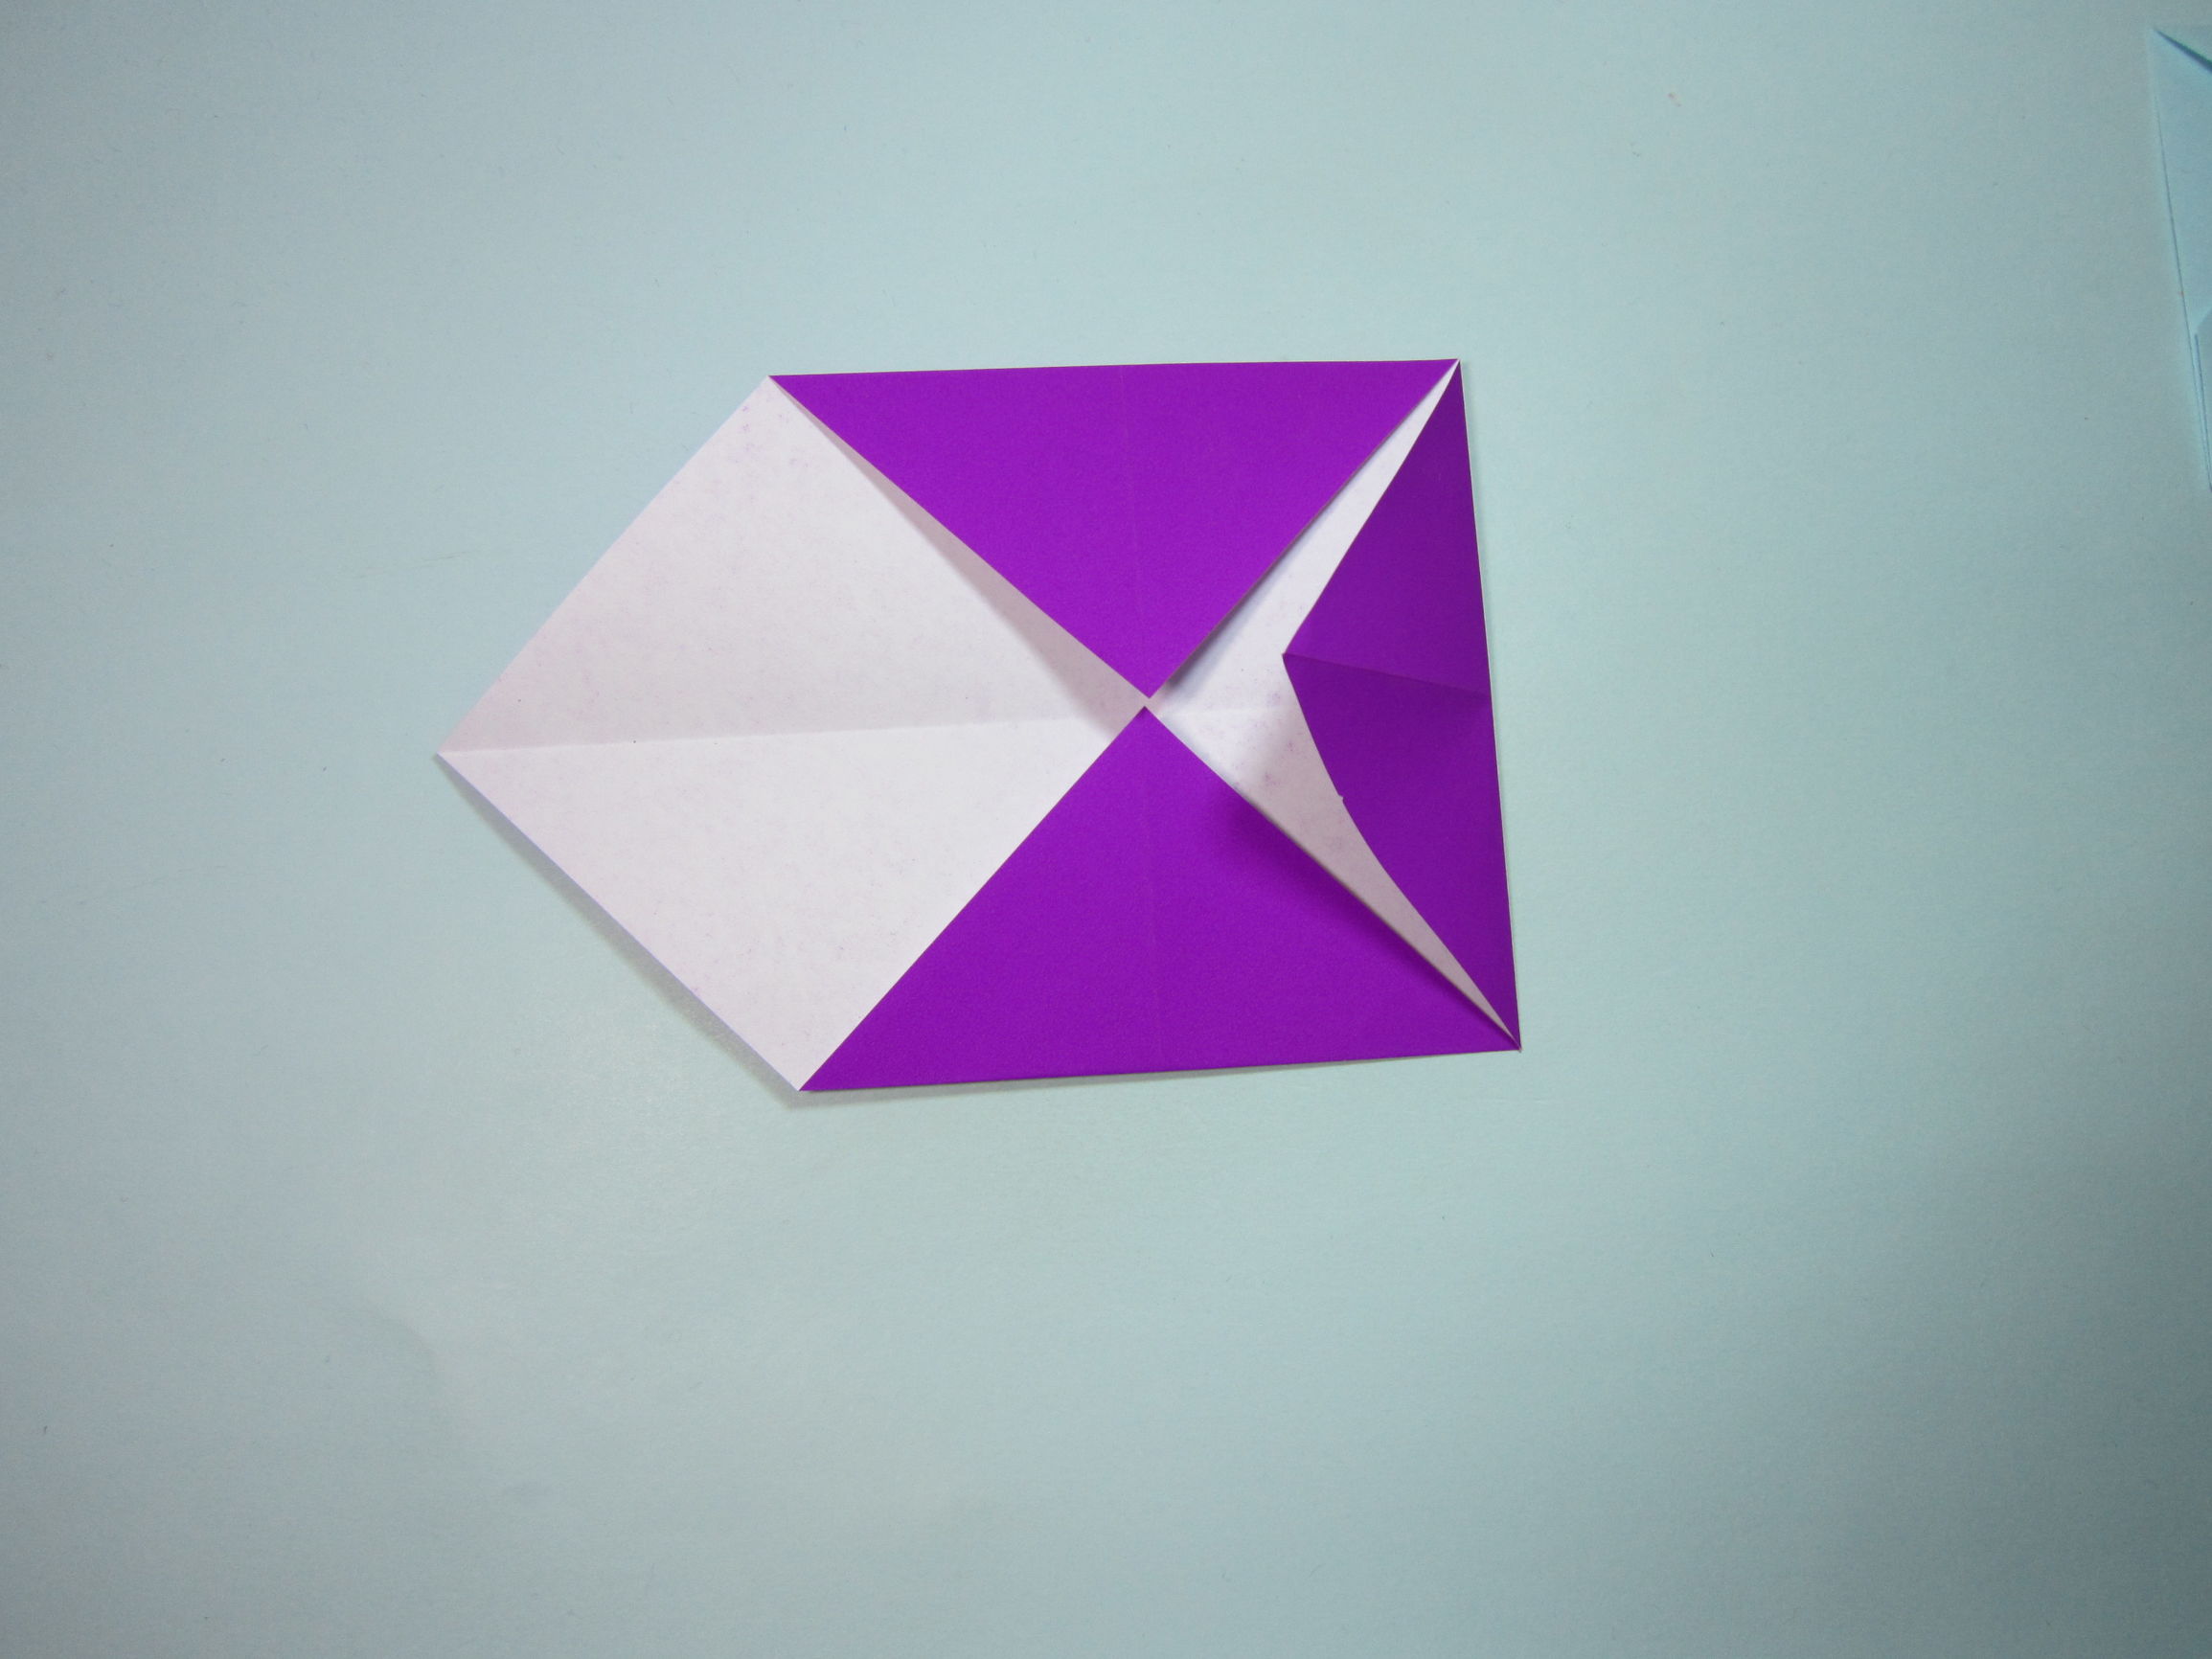 第1步,首先准备一张正方形纸,将纸张的四个角分别沿着对角线两两对折